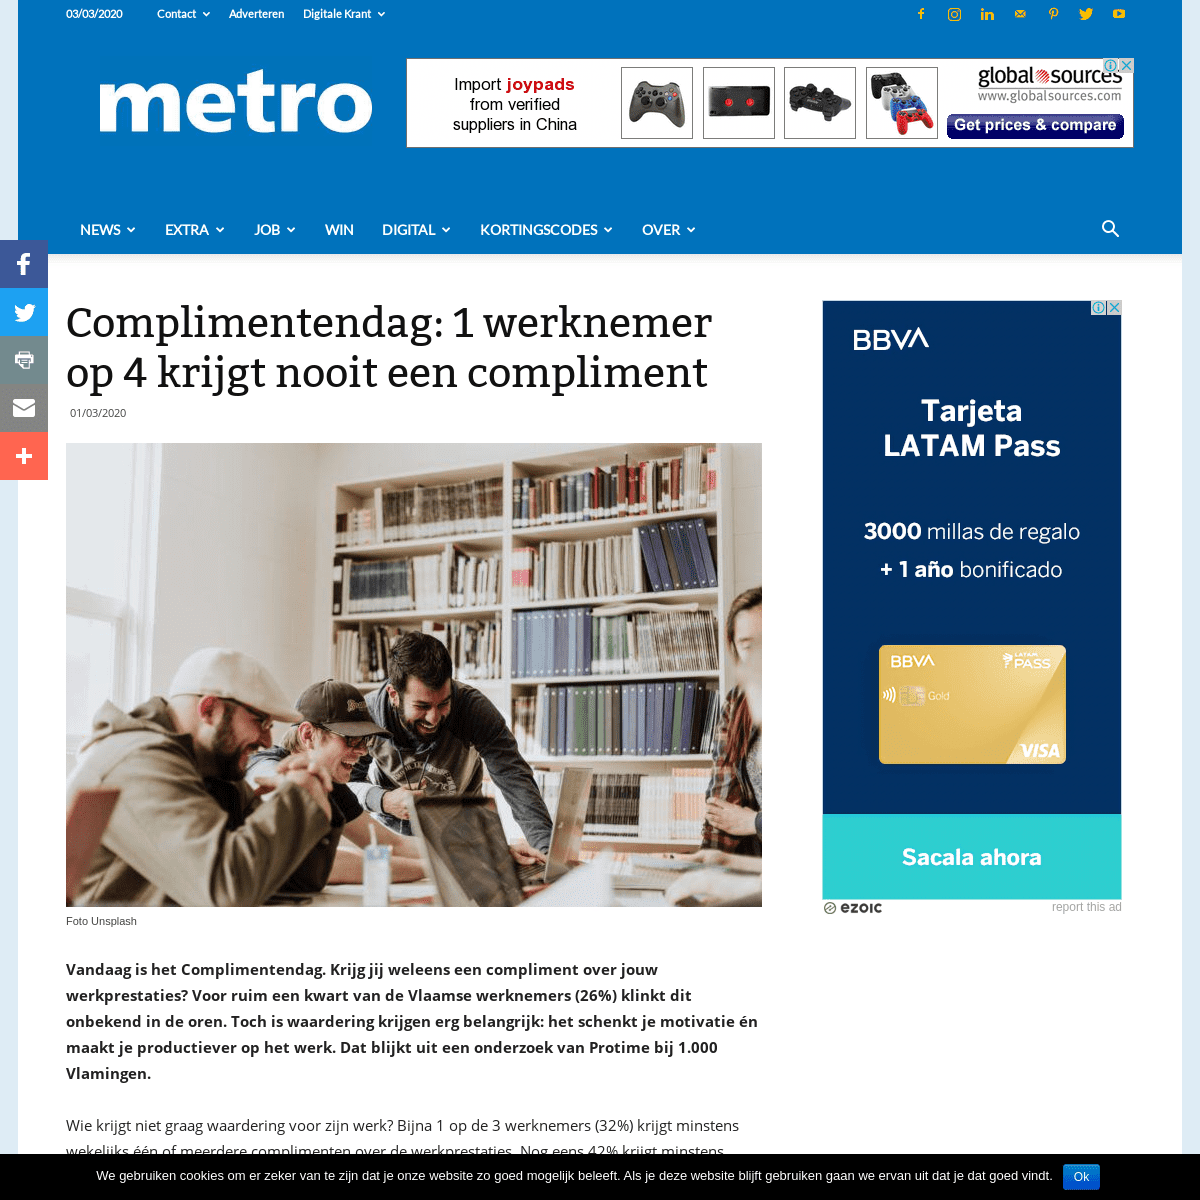 A complete backup of nl.metrotime.be/2020/03/01/must-read/complimentendag-1-werknemer-op-4-krijgt-nooit-een-compliment/